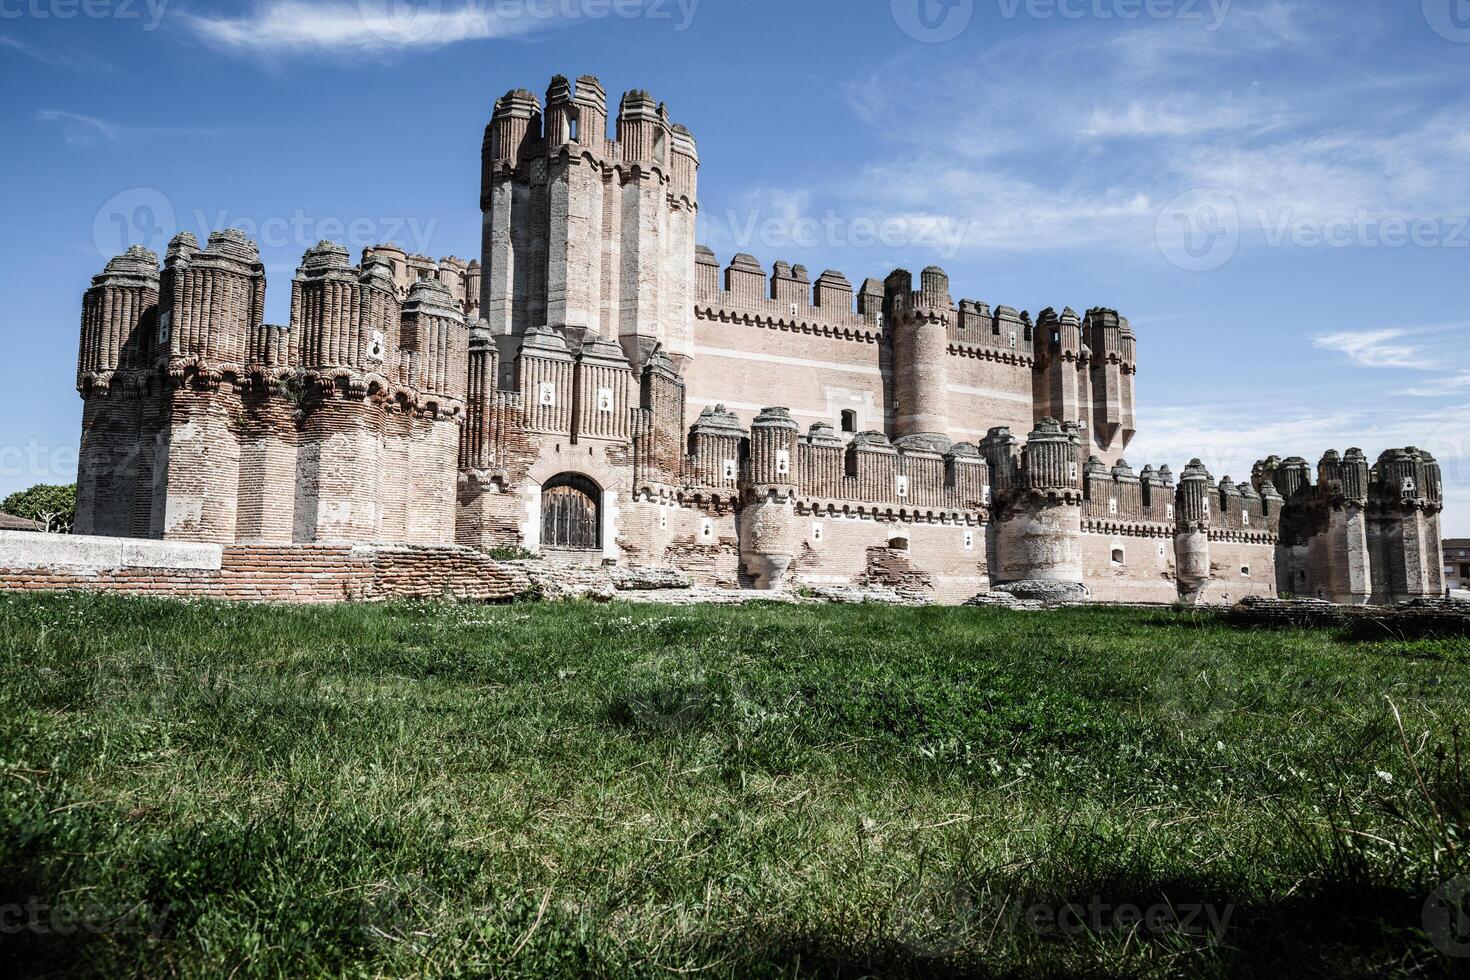 coca slott castillo de coca är en befästning konstruerad i de 15:e århundrade och är belägen i coca, i segovia provins, castilla y leon, Spanien foto